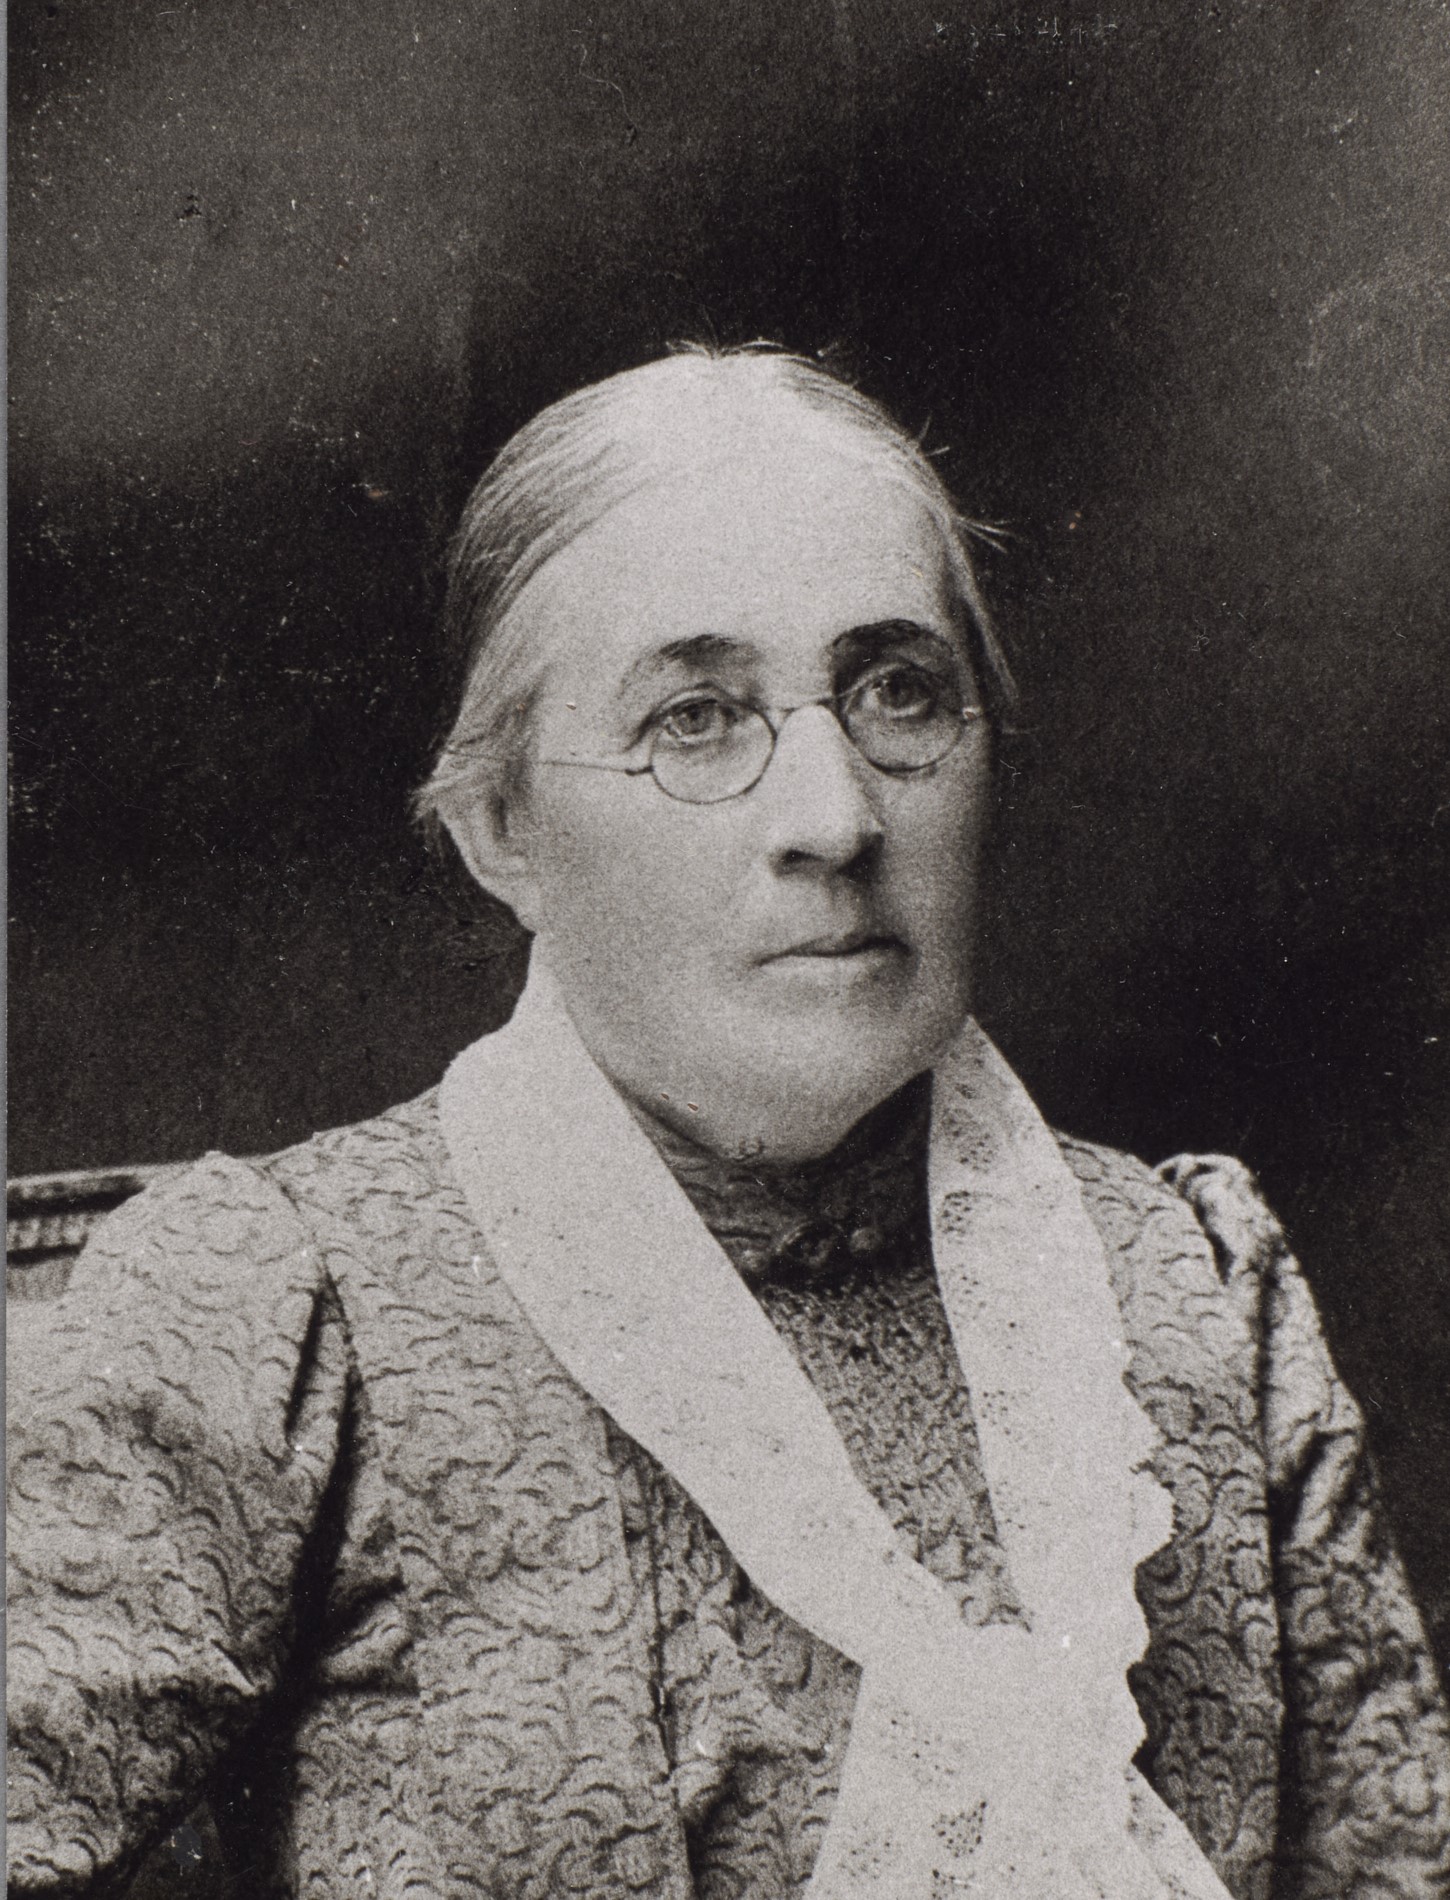 Fotografi av en äldre kvinna med glasögon och håret i knut